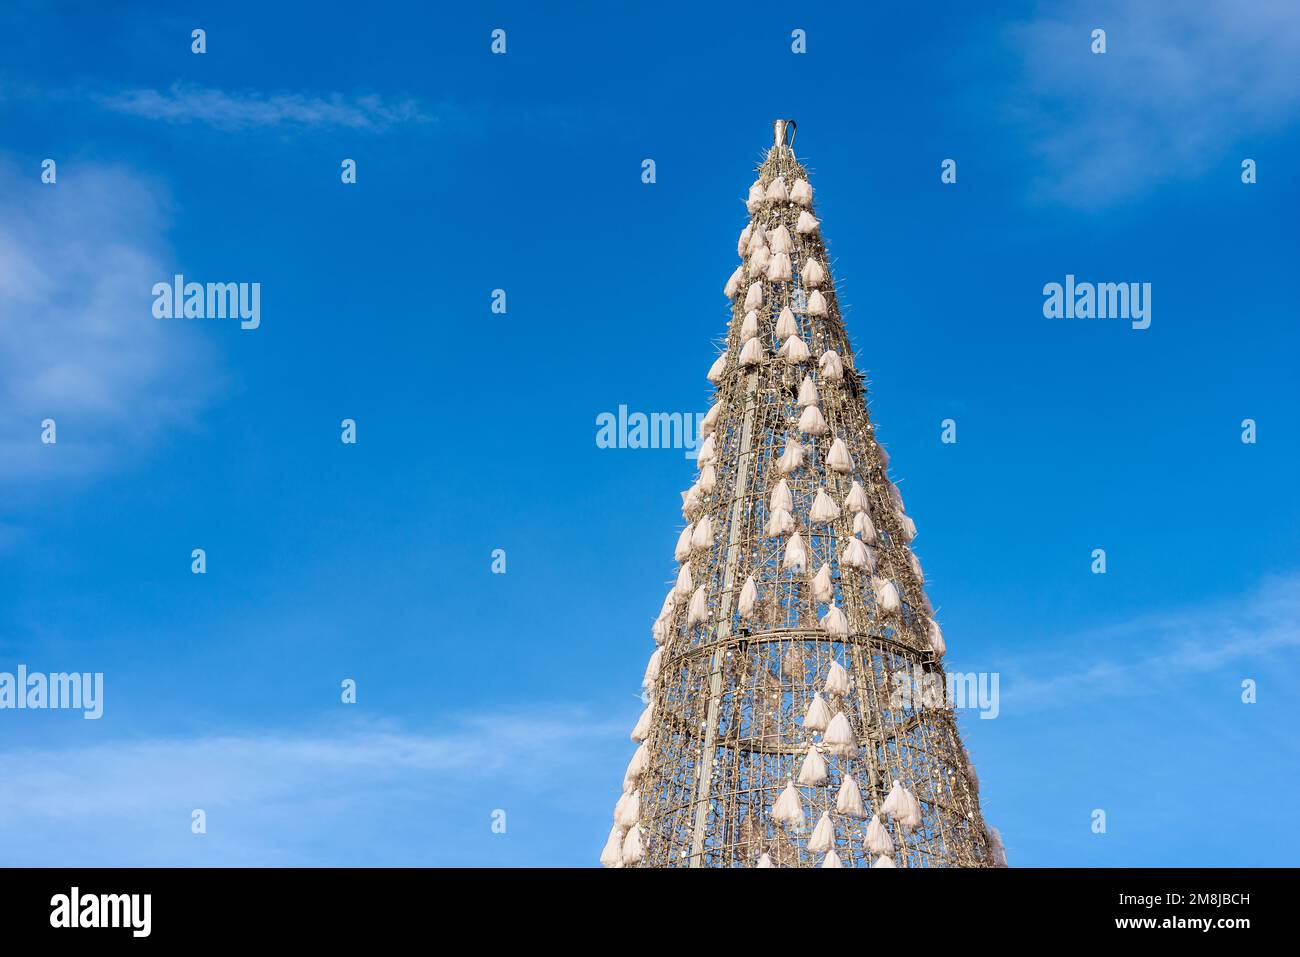 Primo piano di un albero di Natale (sezione alta, fotografia) contro un cielo blu chiaro con spazio di copia. Plaza Mayor (piazza principale), Madrid centro, Spagna. Foto Stock